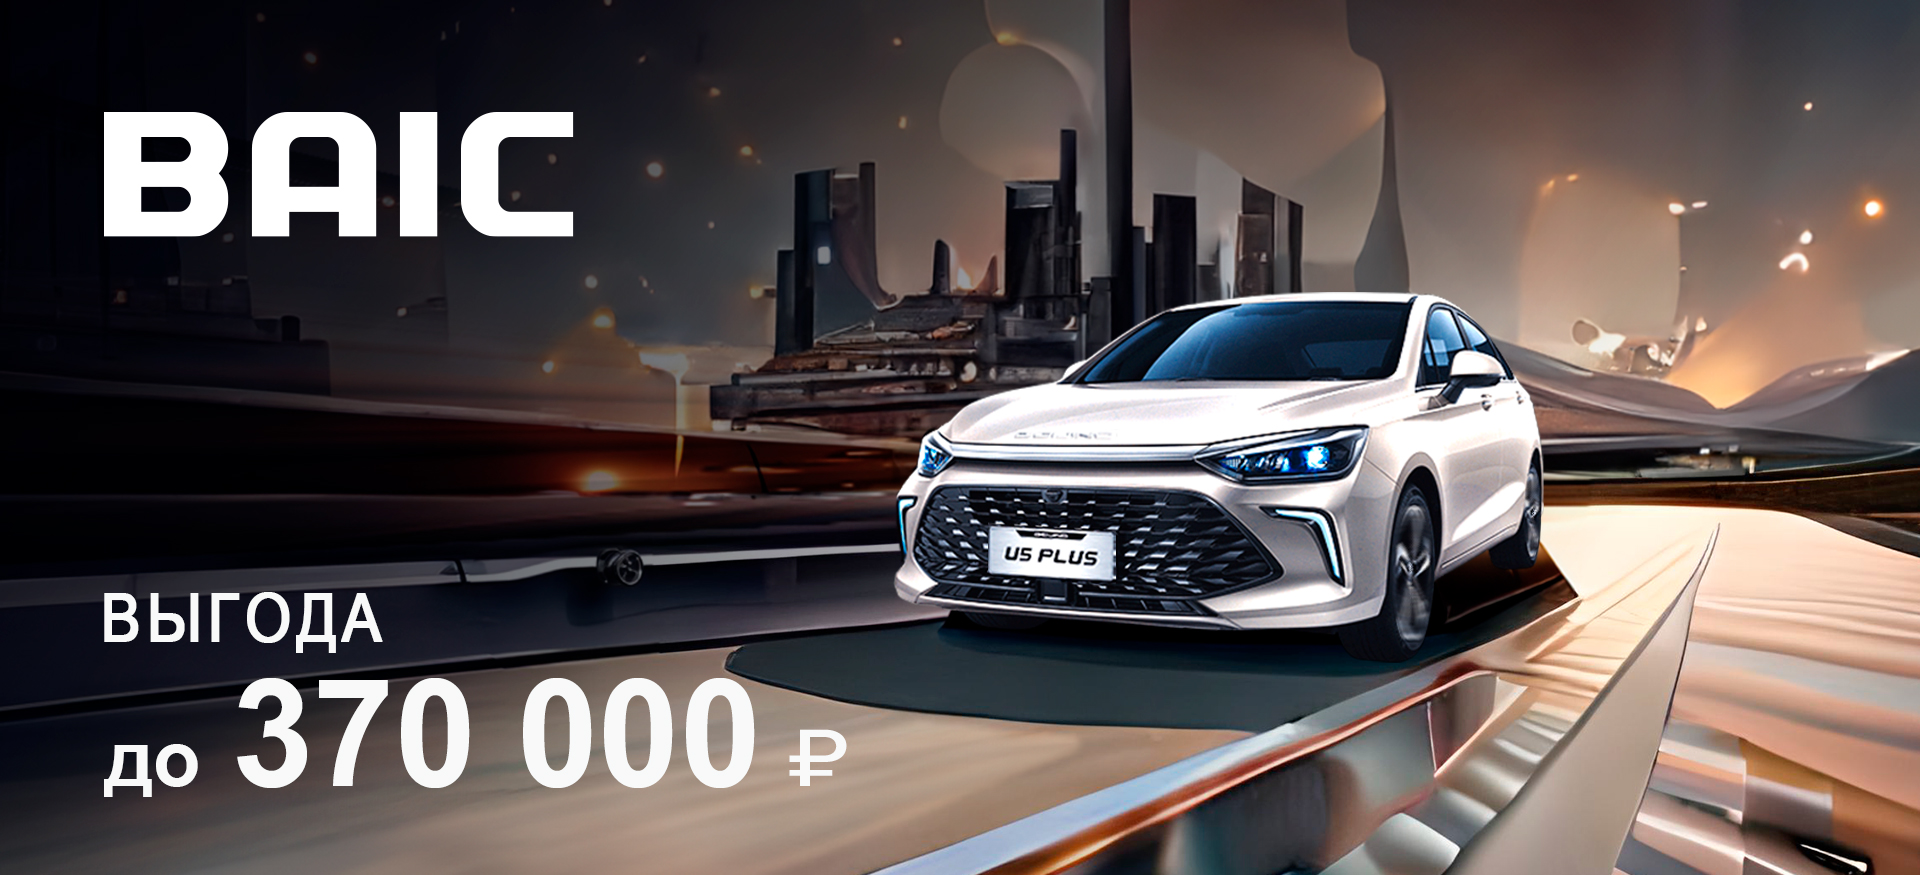 Эксклюзивное предложение: Выгода до 370 000 ₽ на автомобили BAIC!